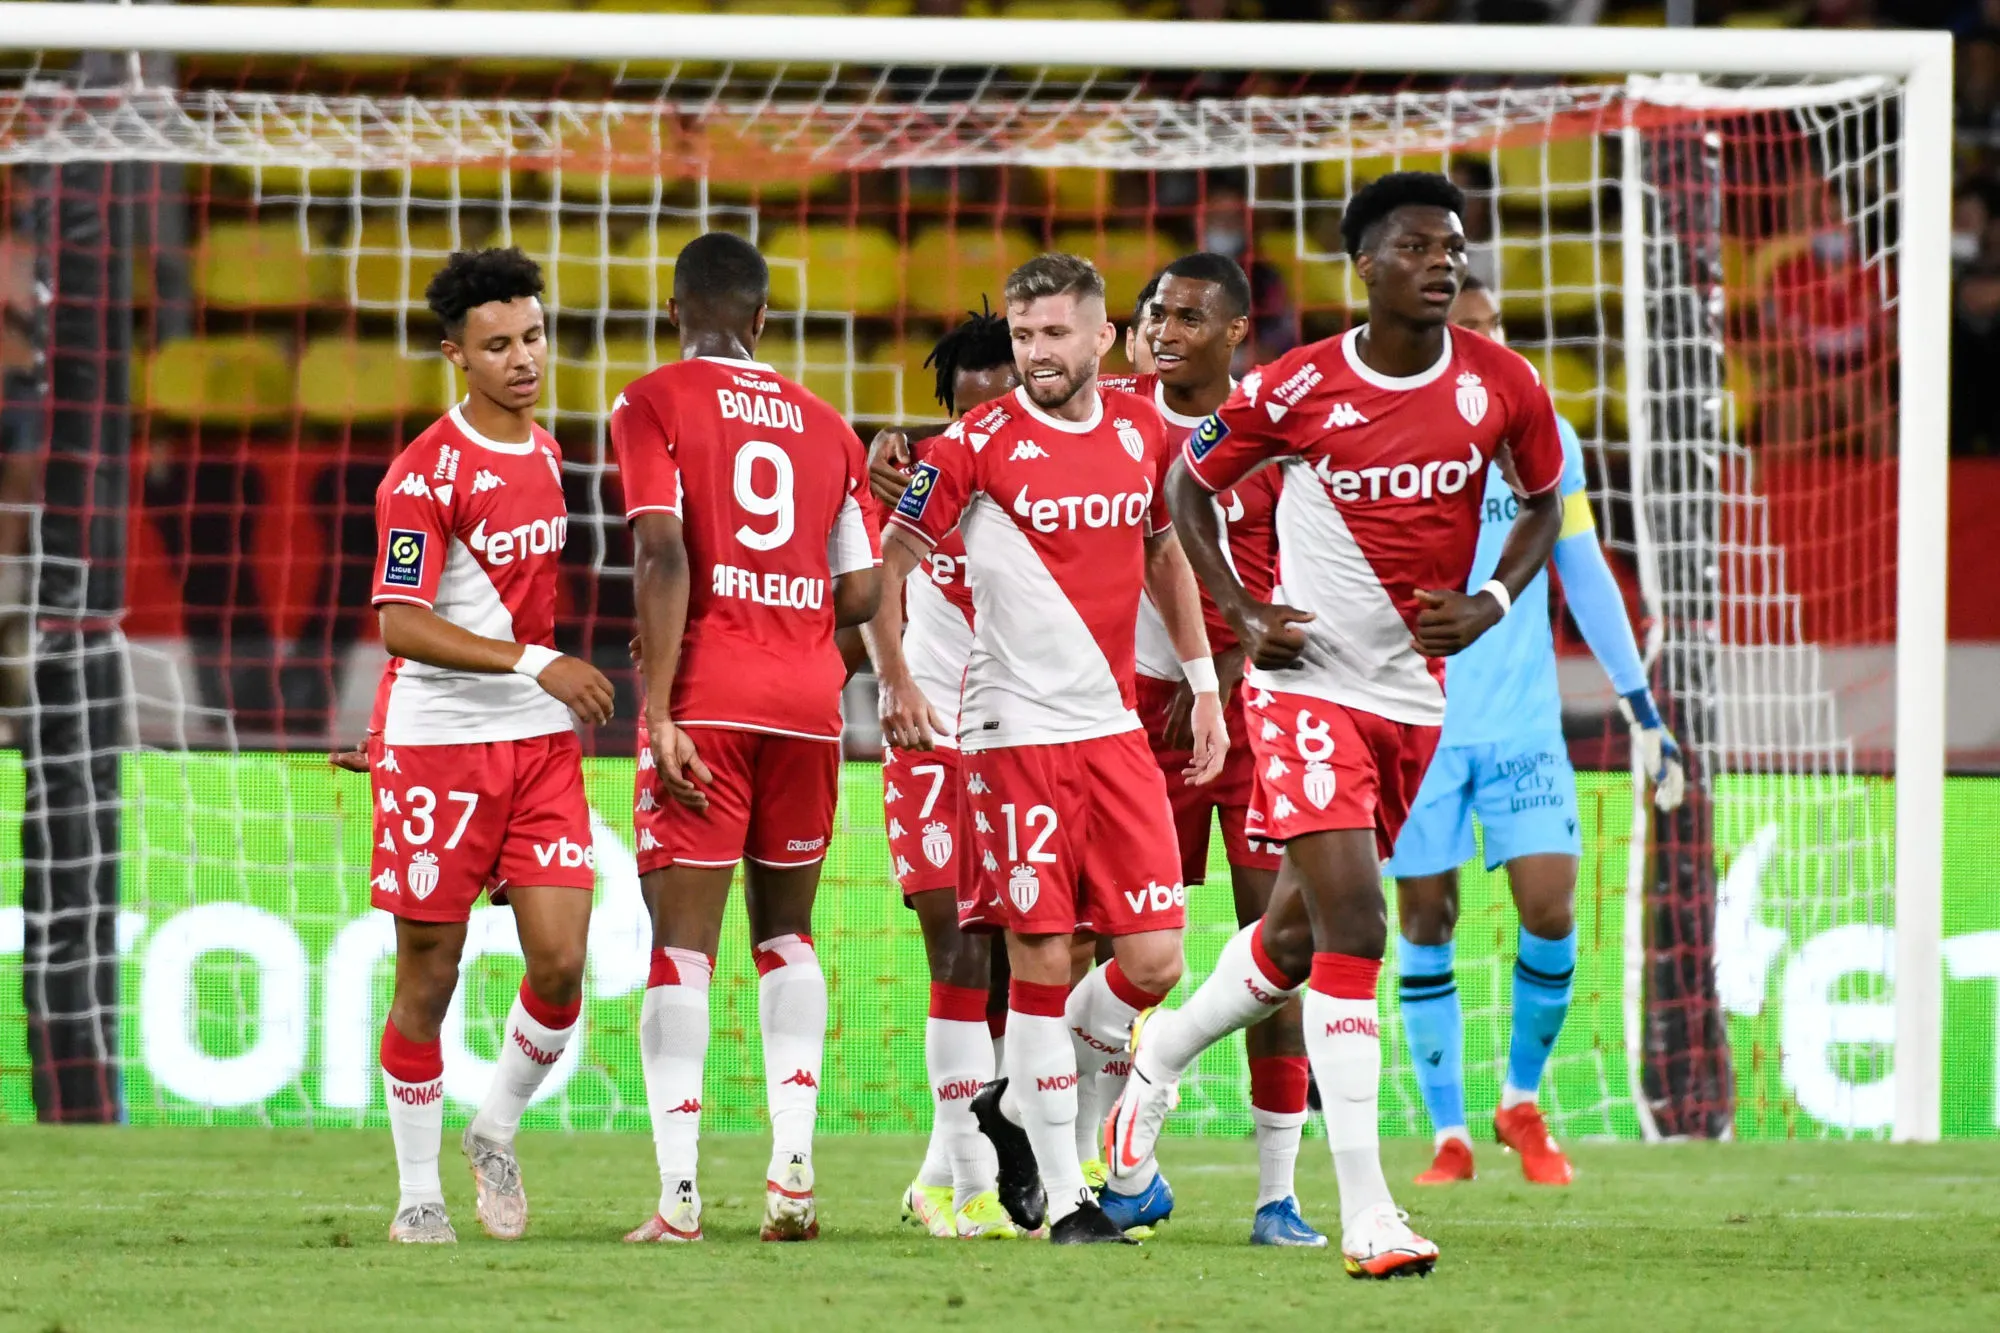 Pronostic Monaco Braga : Analyse, cotes et prono du 8e de finale retour de Ligue Europa